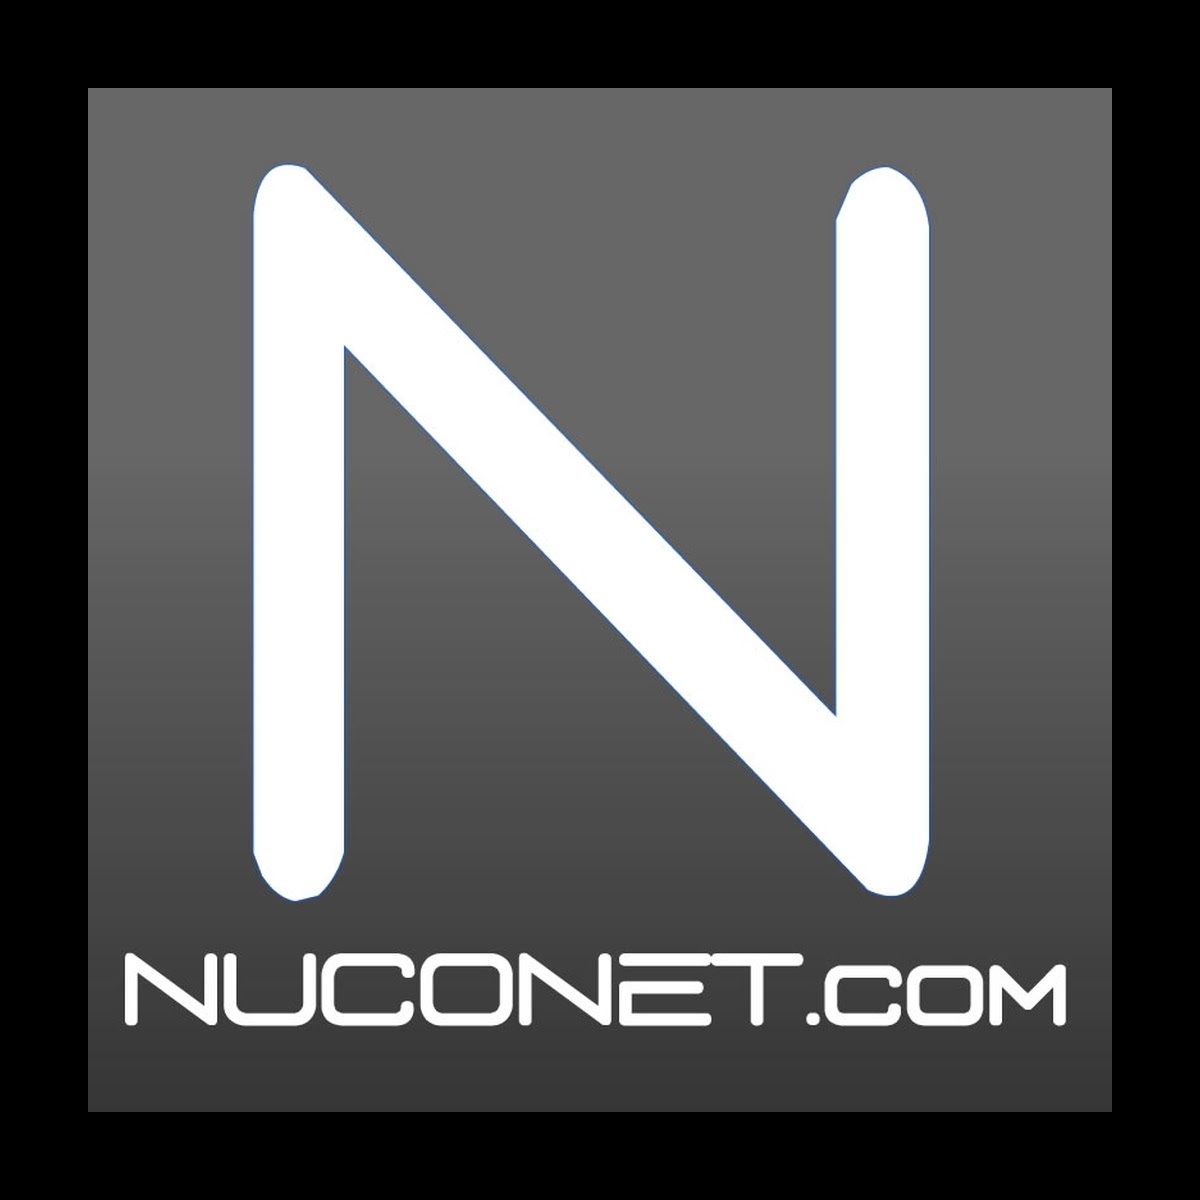 NUCONET 1200x1200.jpg